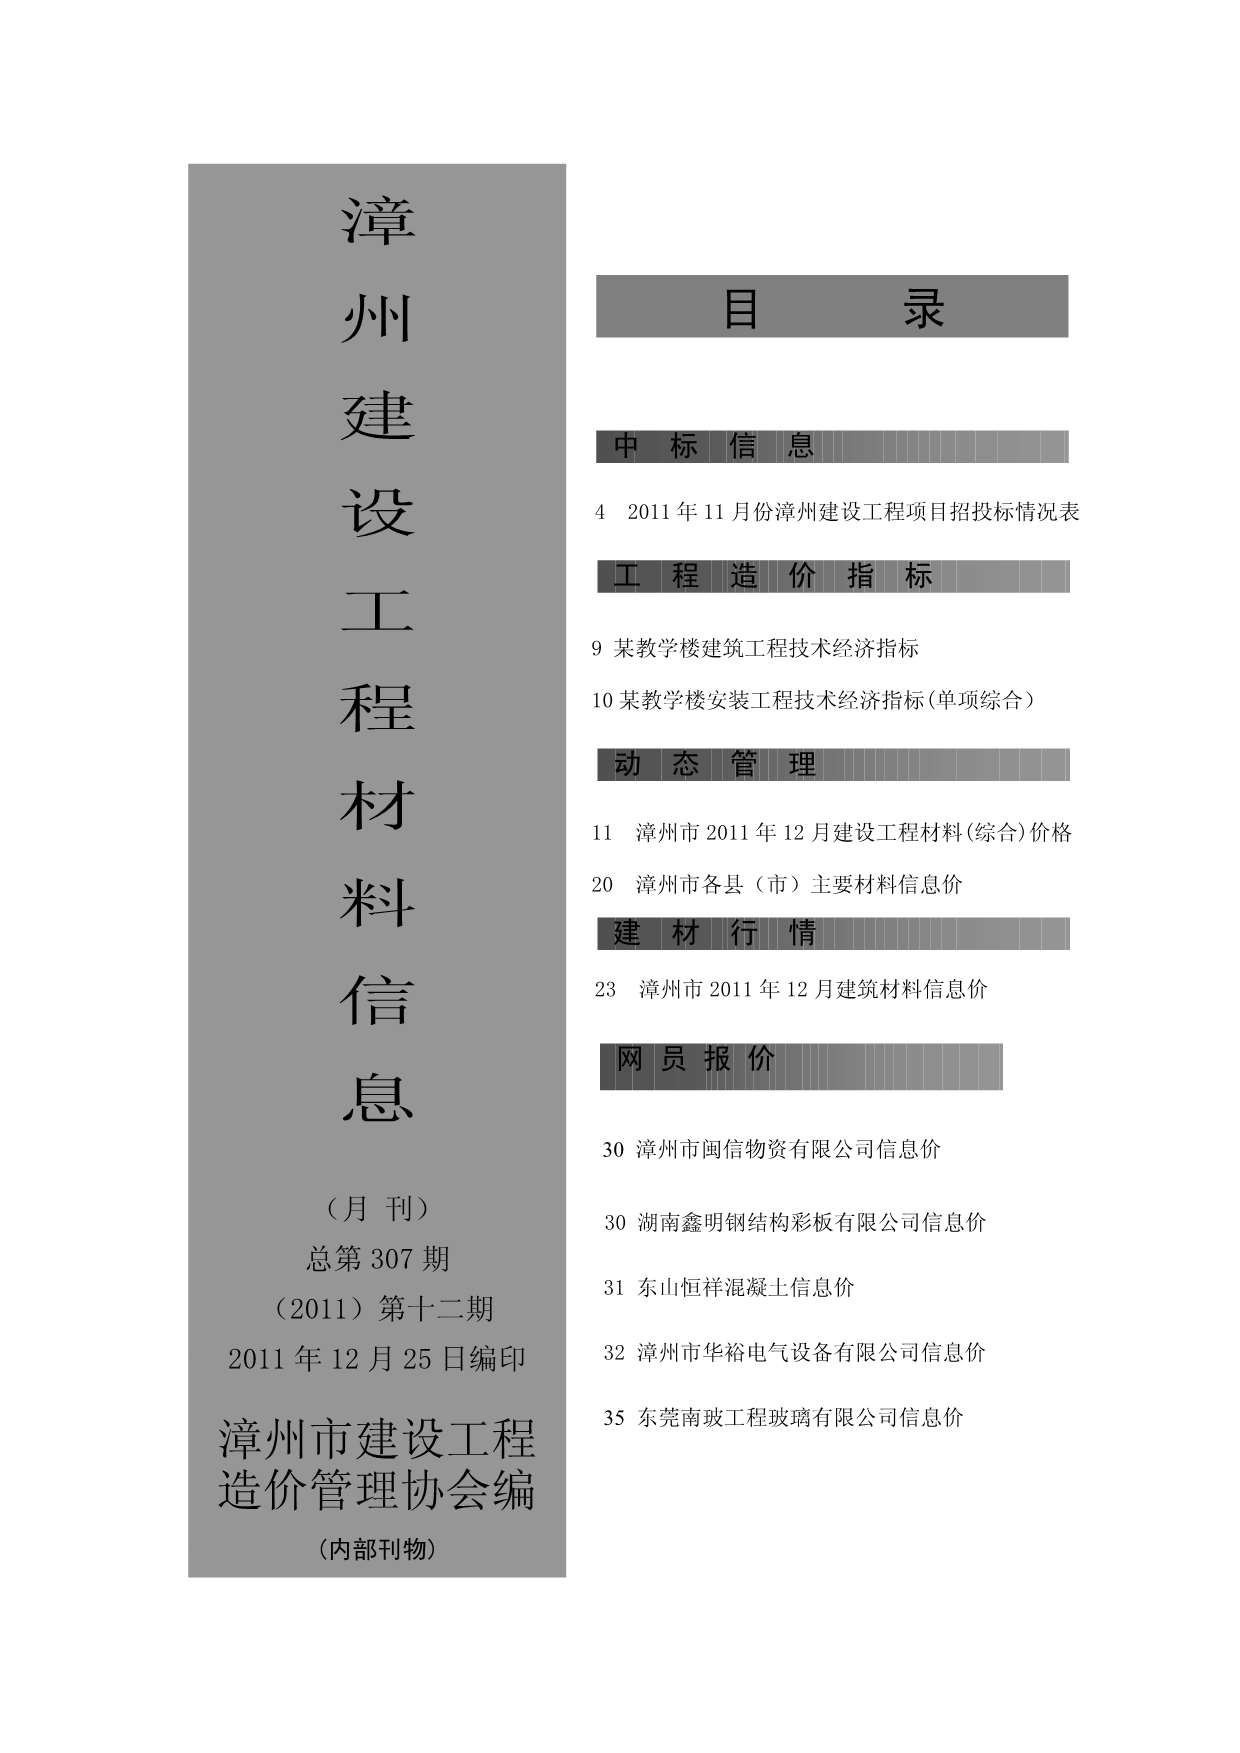 漳州市2011年12月建设工程材料信息造价库信息价